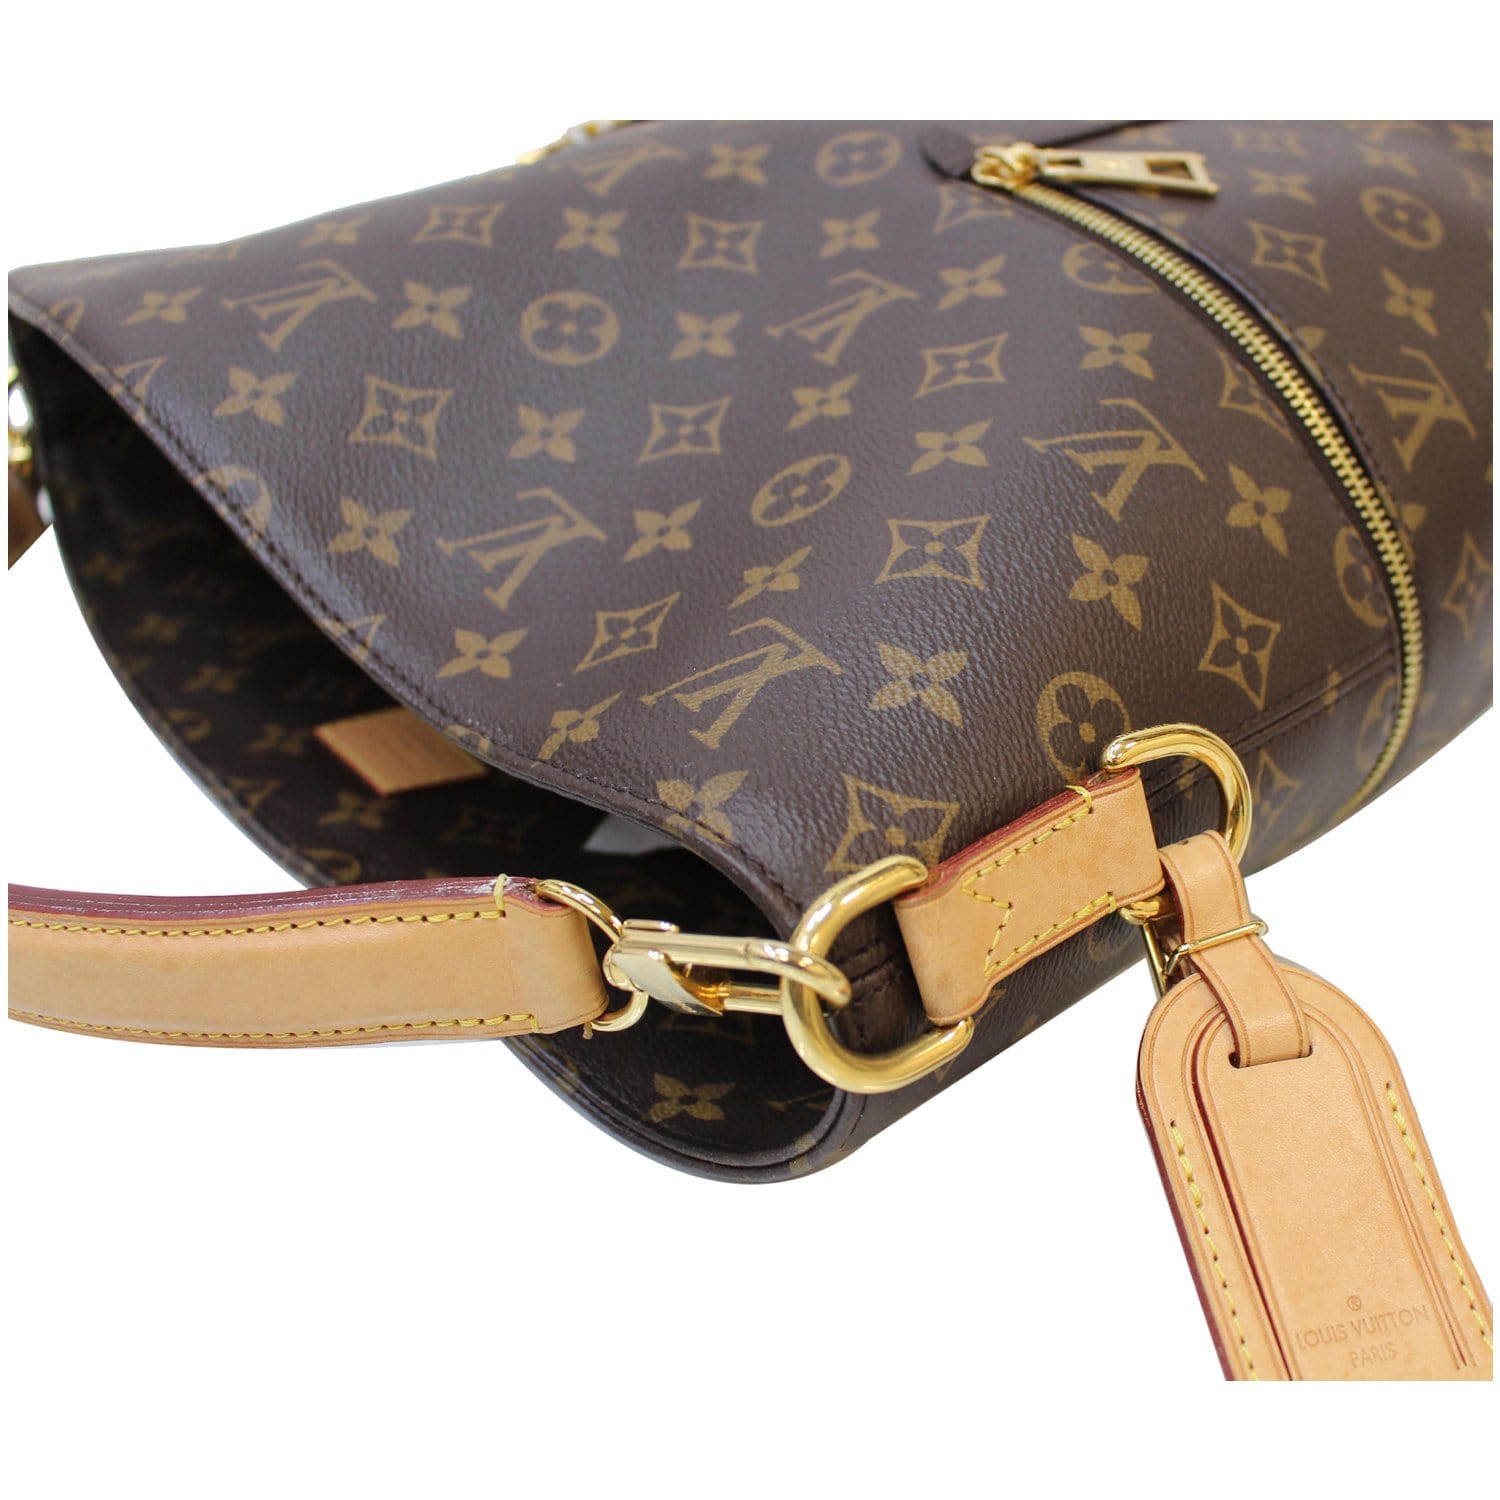 Louis Vuitton Monogram Canvas Melie Bag ○ Labellov ○ Buy and